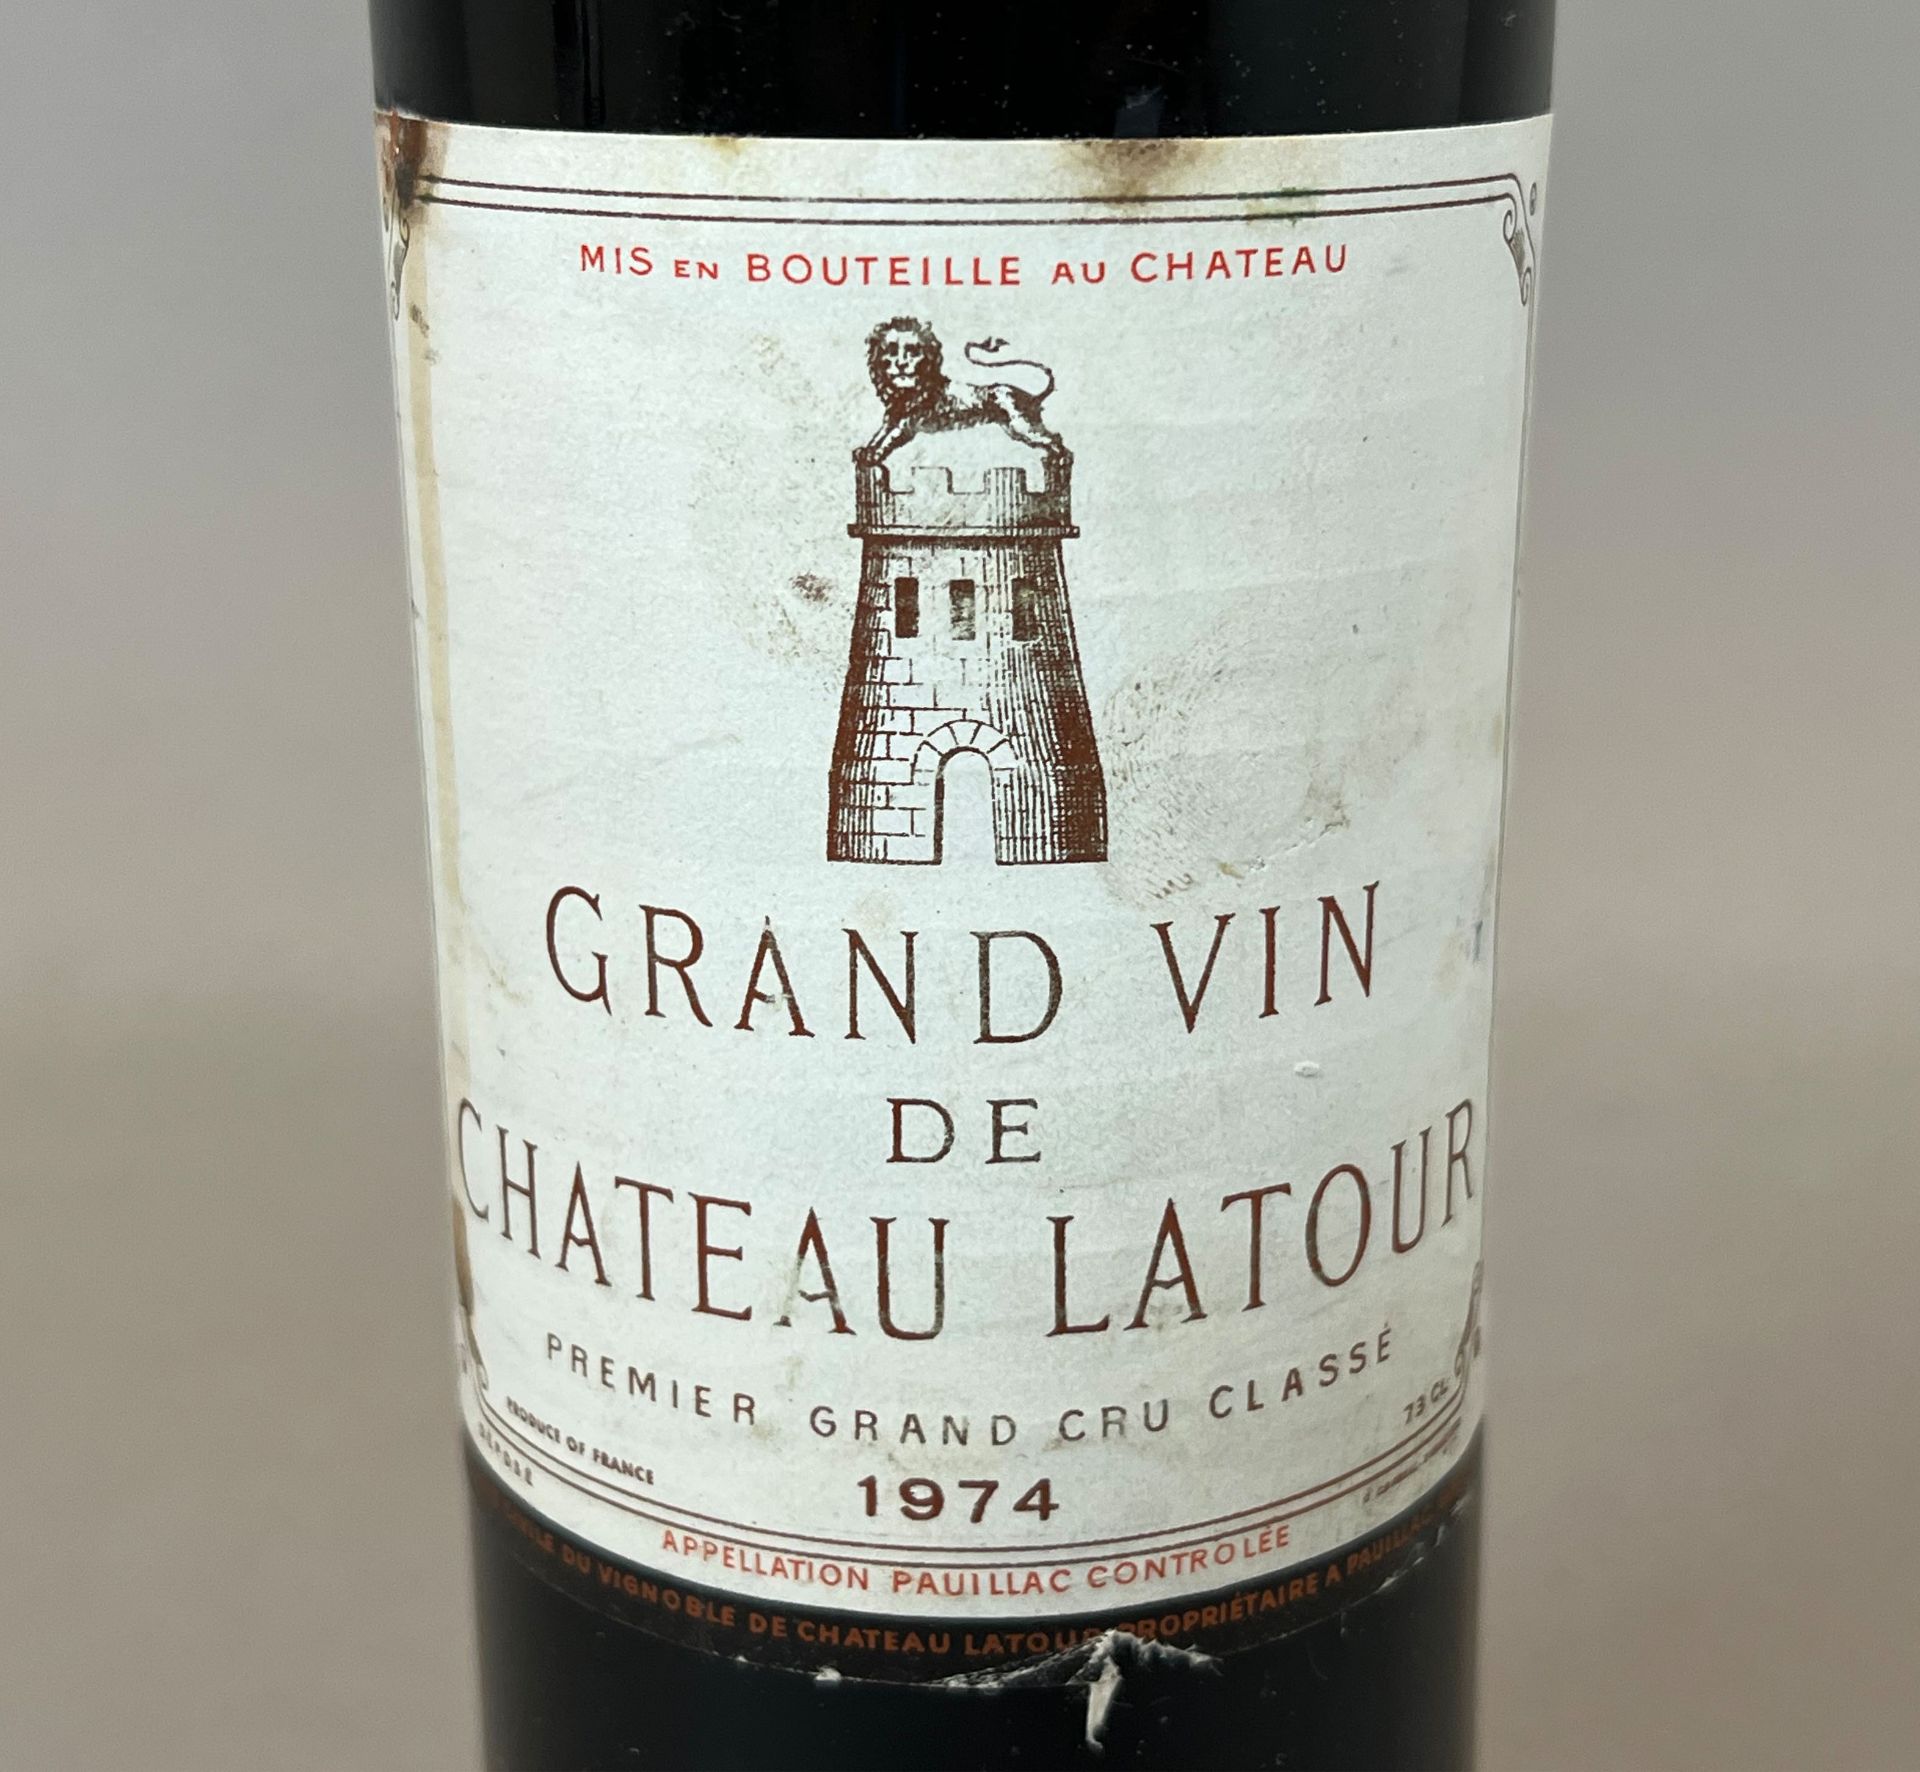 1 bottle of red wine. Château Latour. Premier Grand Cru Classé Pauillac. 1974. - Image 3 of 5